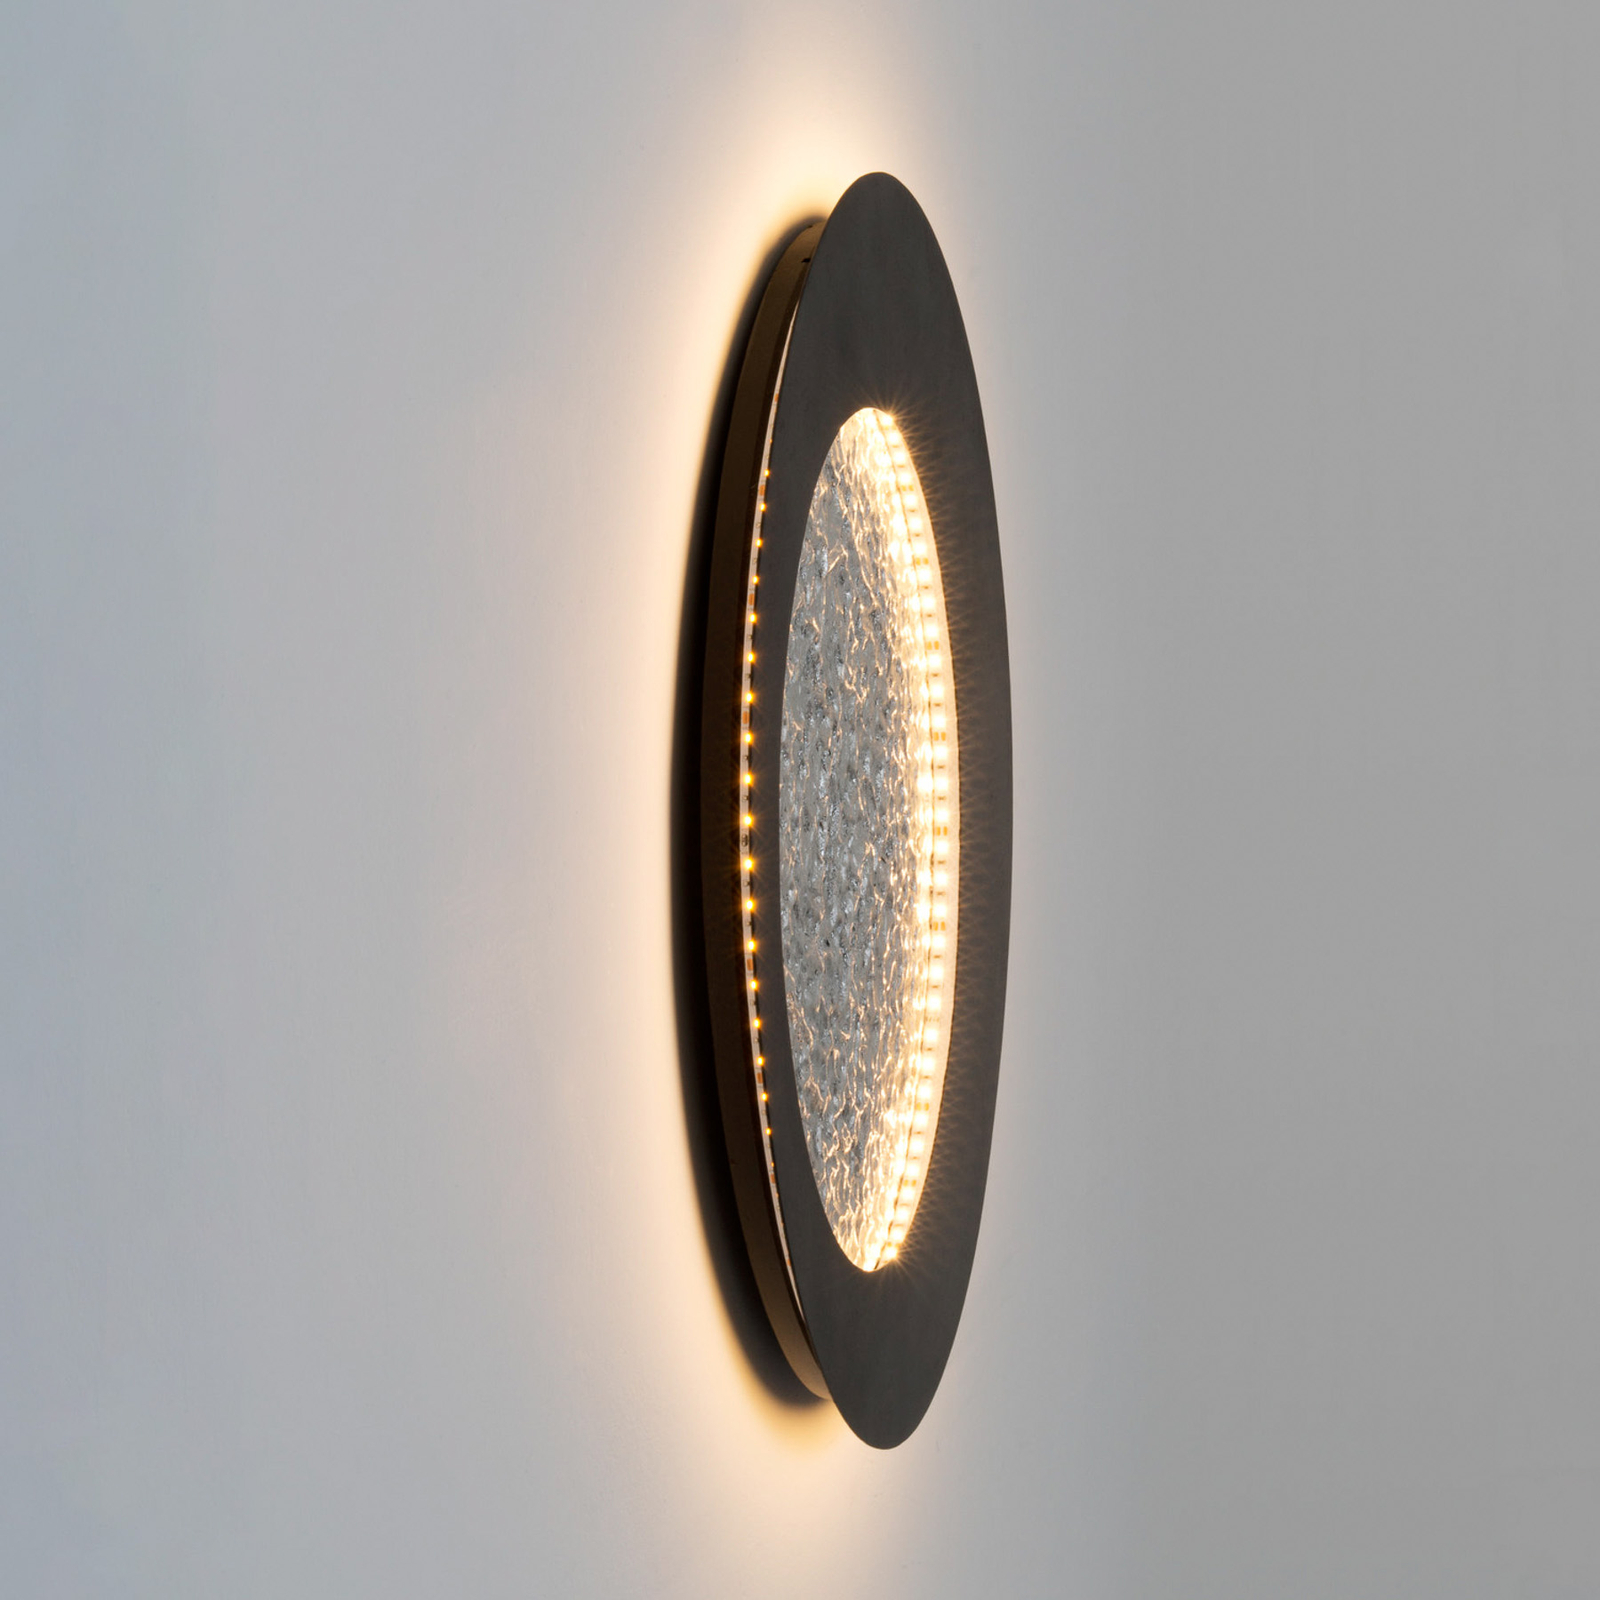 LED-Wandleuchte Plenilunio, braun-schwarz/silber, 60 cm